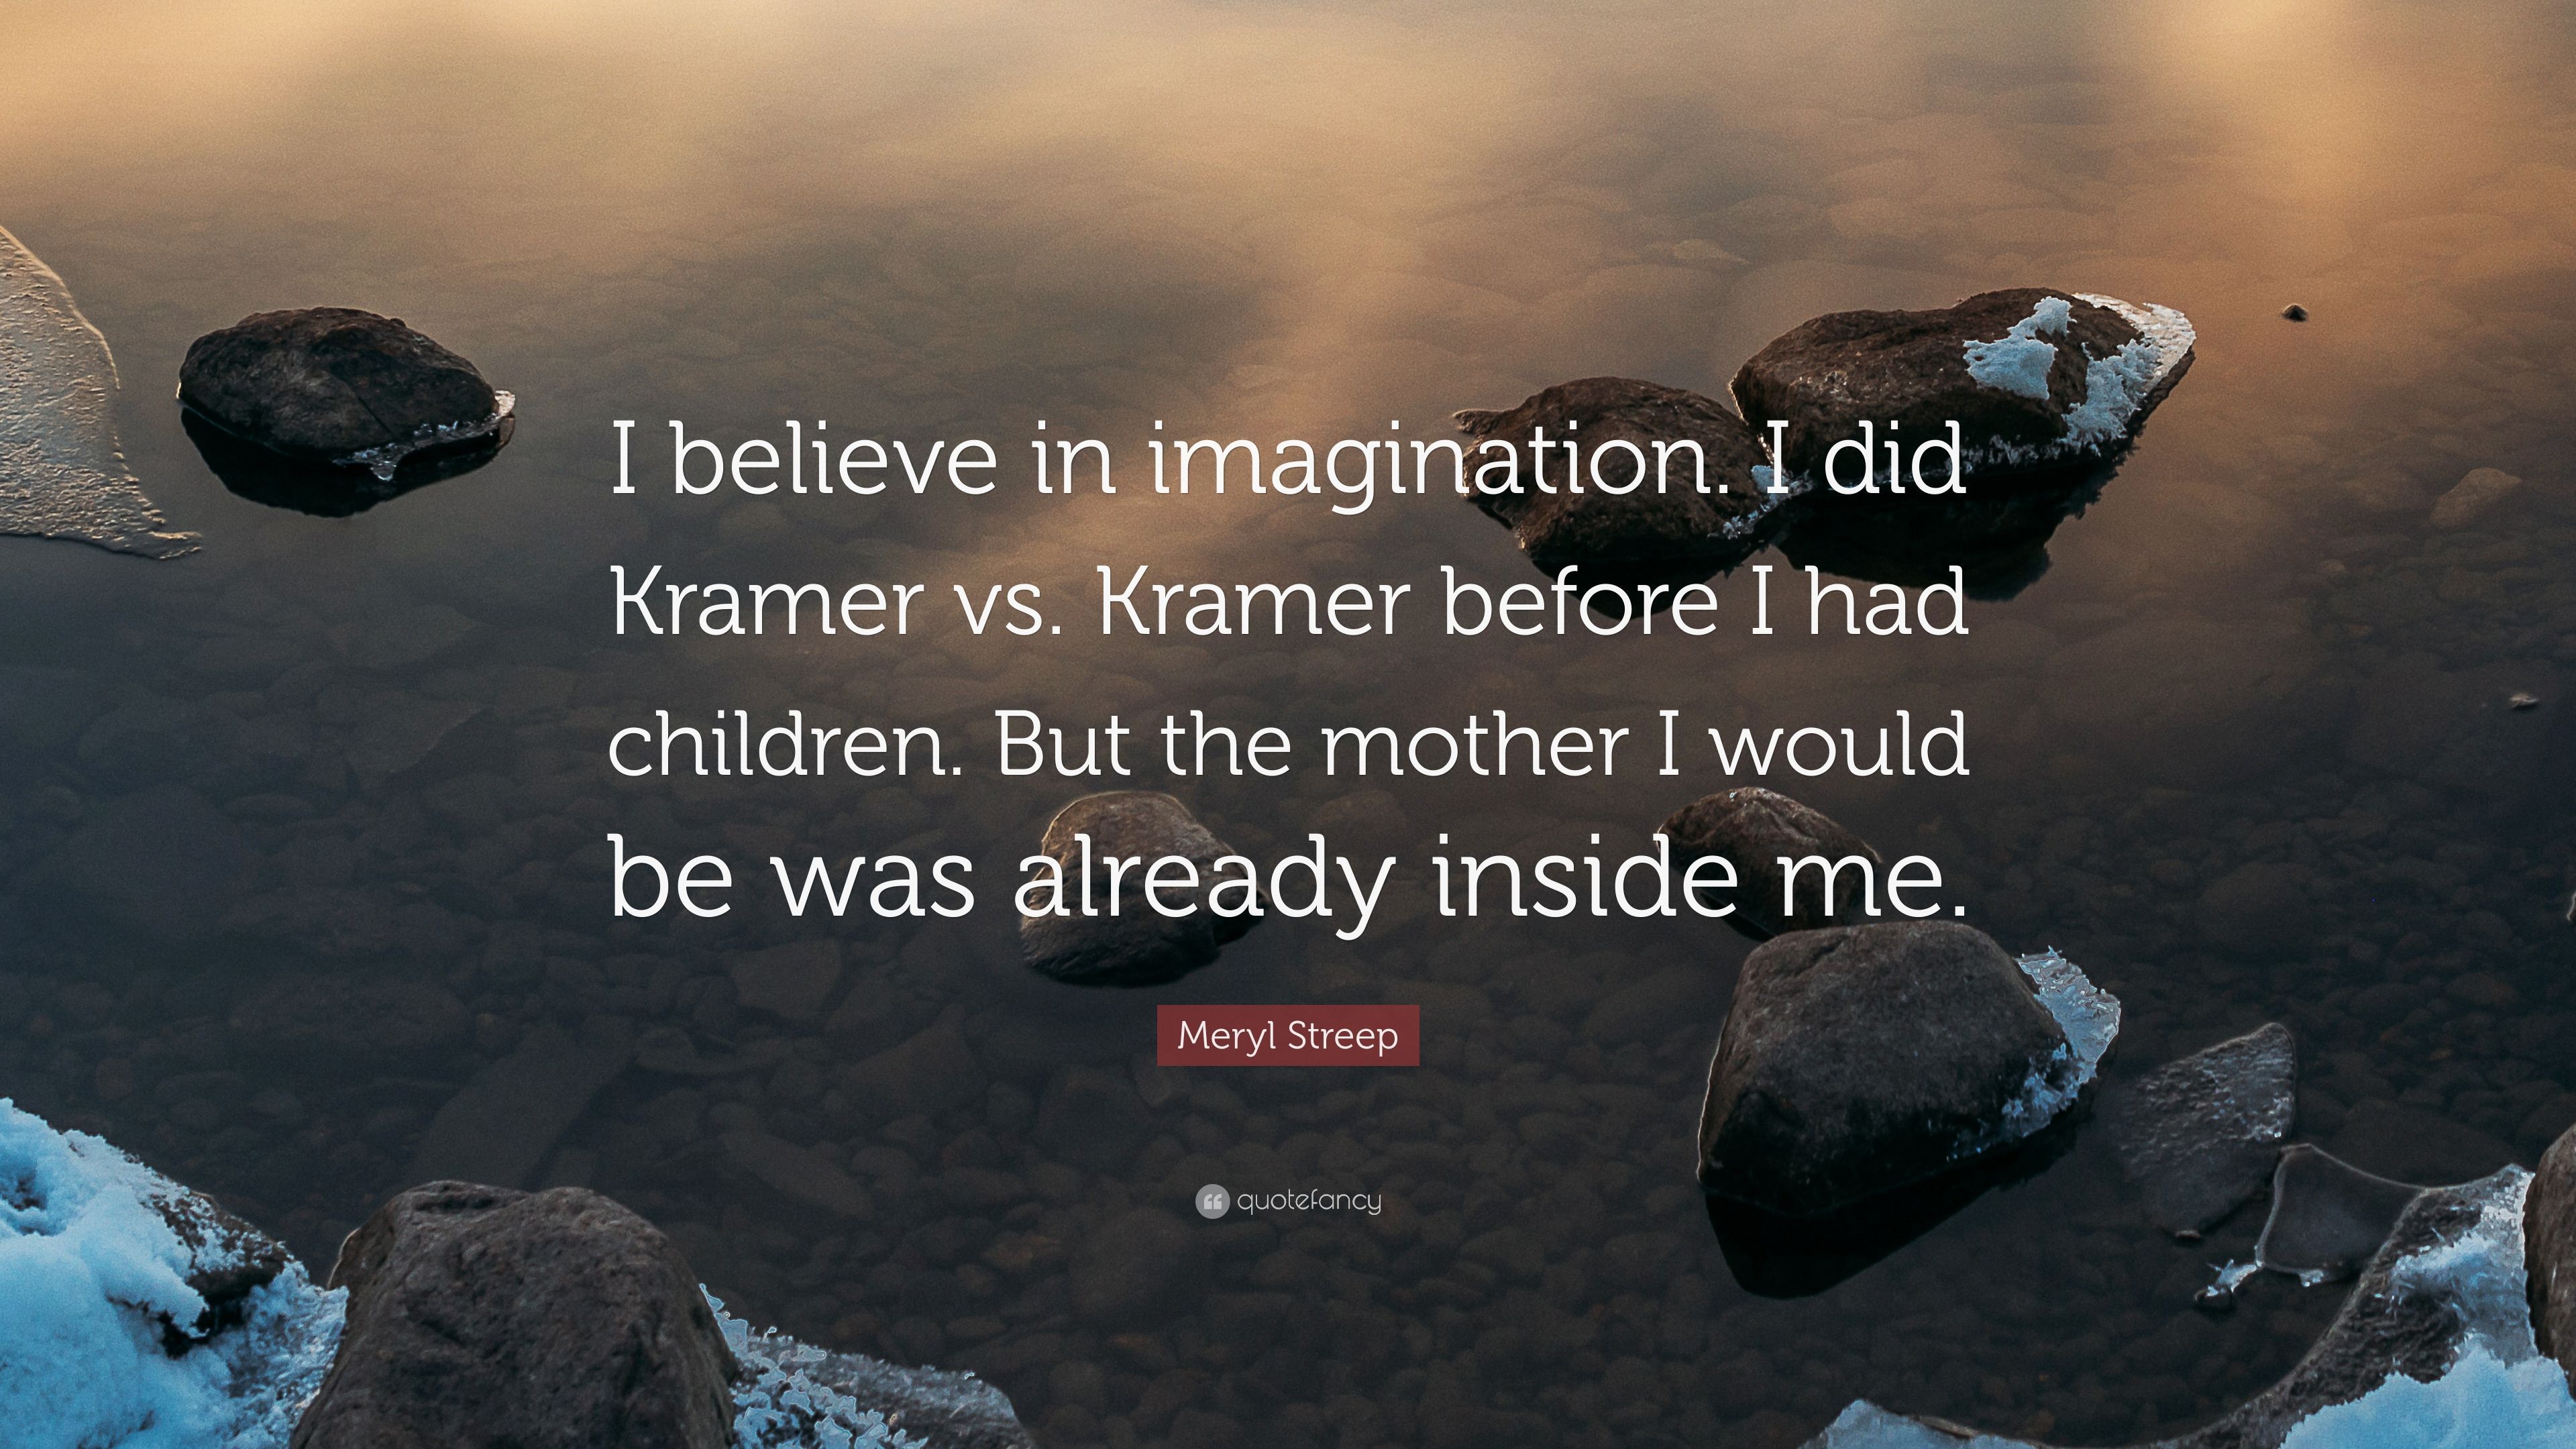 Meryl Streep Quote: “I believe in imagination. I did Kramer vs